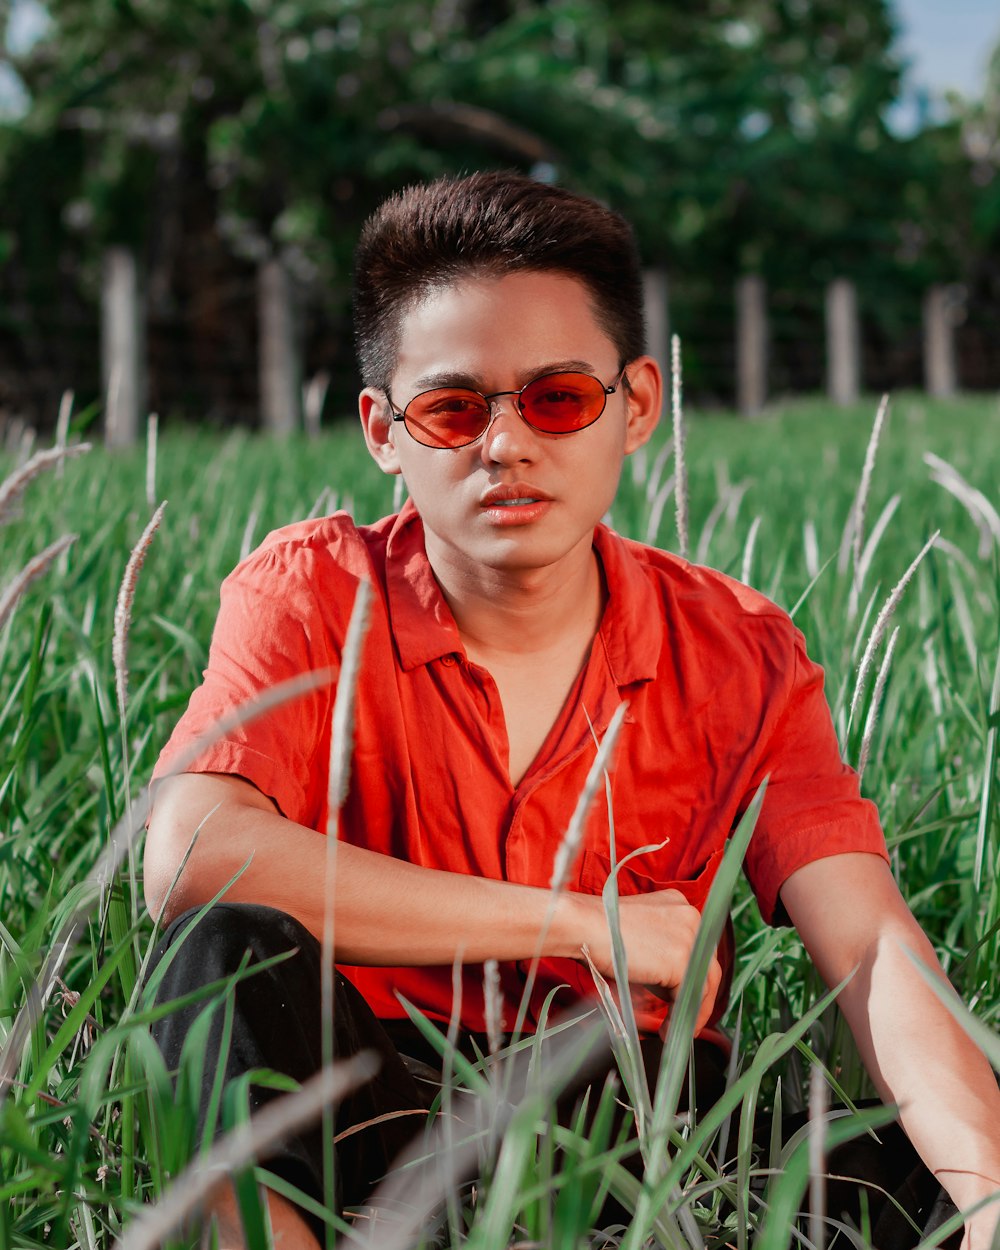 Mann mit rotem Hemd und Sonnenbrille sitzt auf Gras